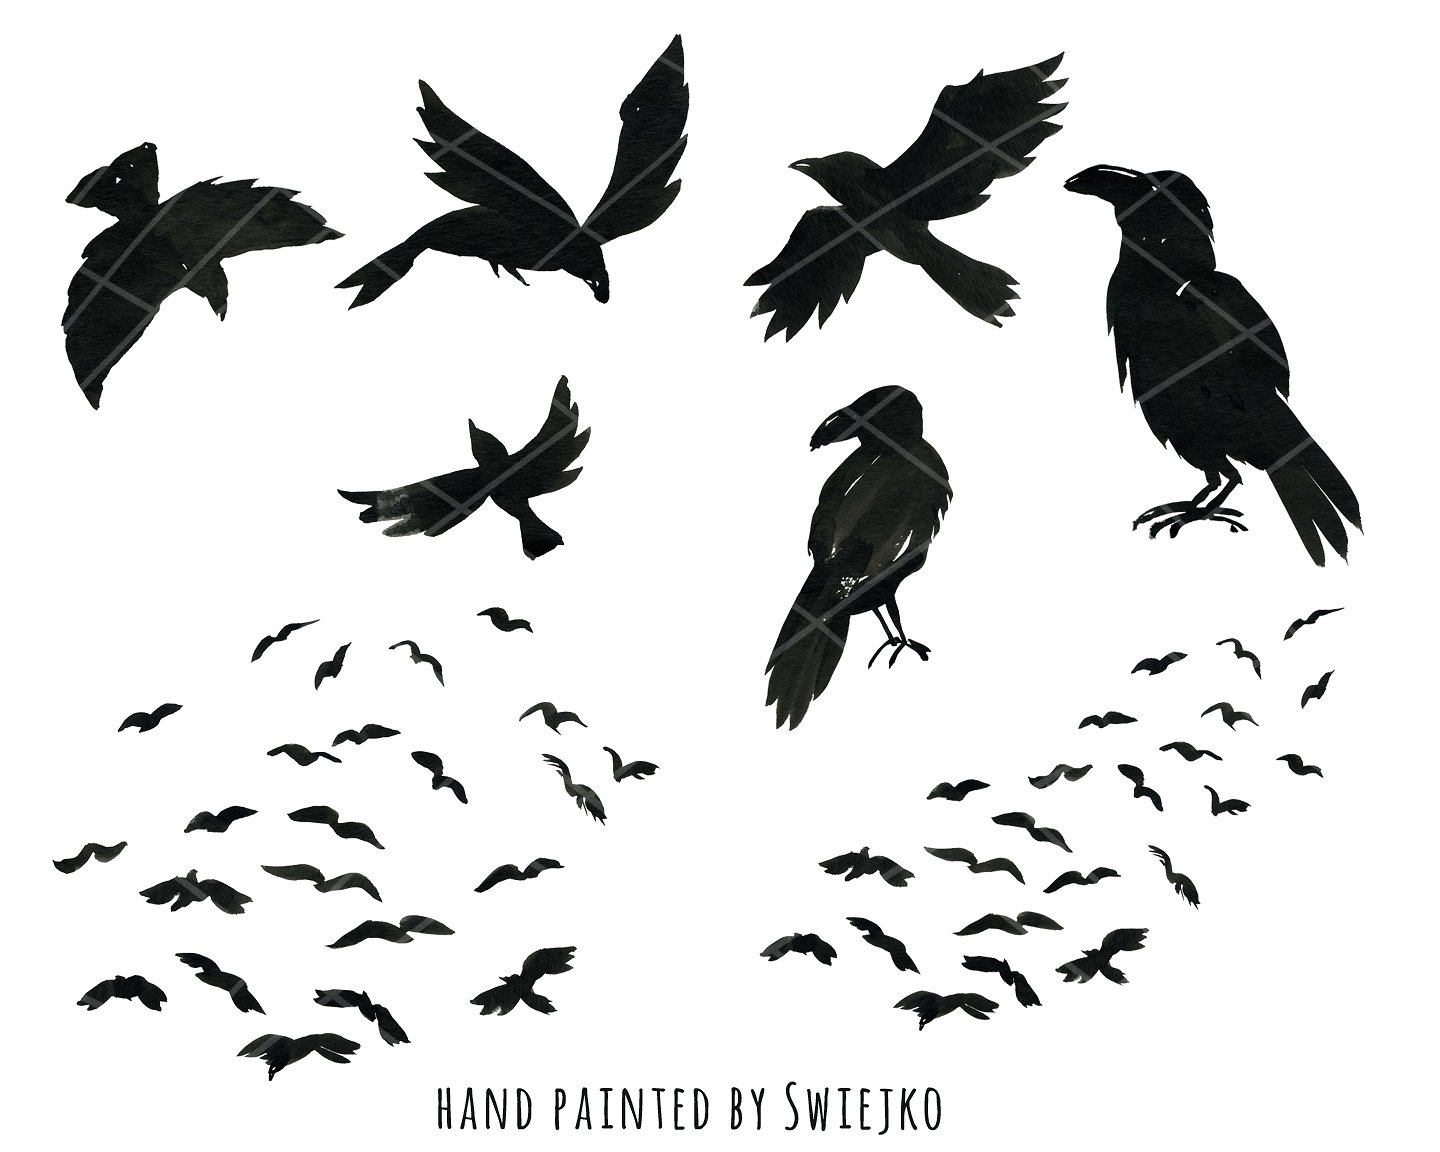 手绘水彩乌鸦设计素材Halloween Ravens, cl